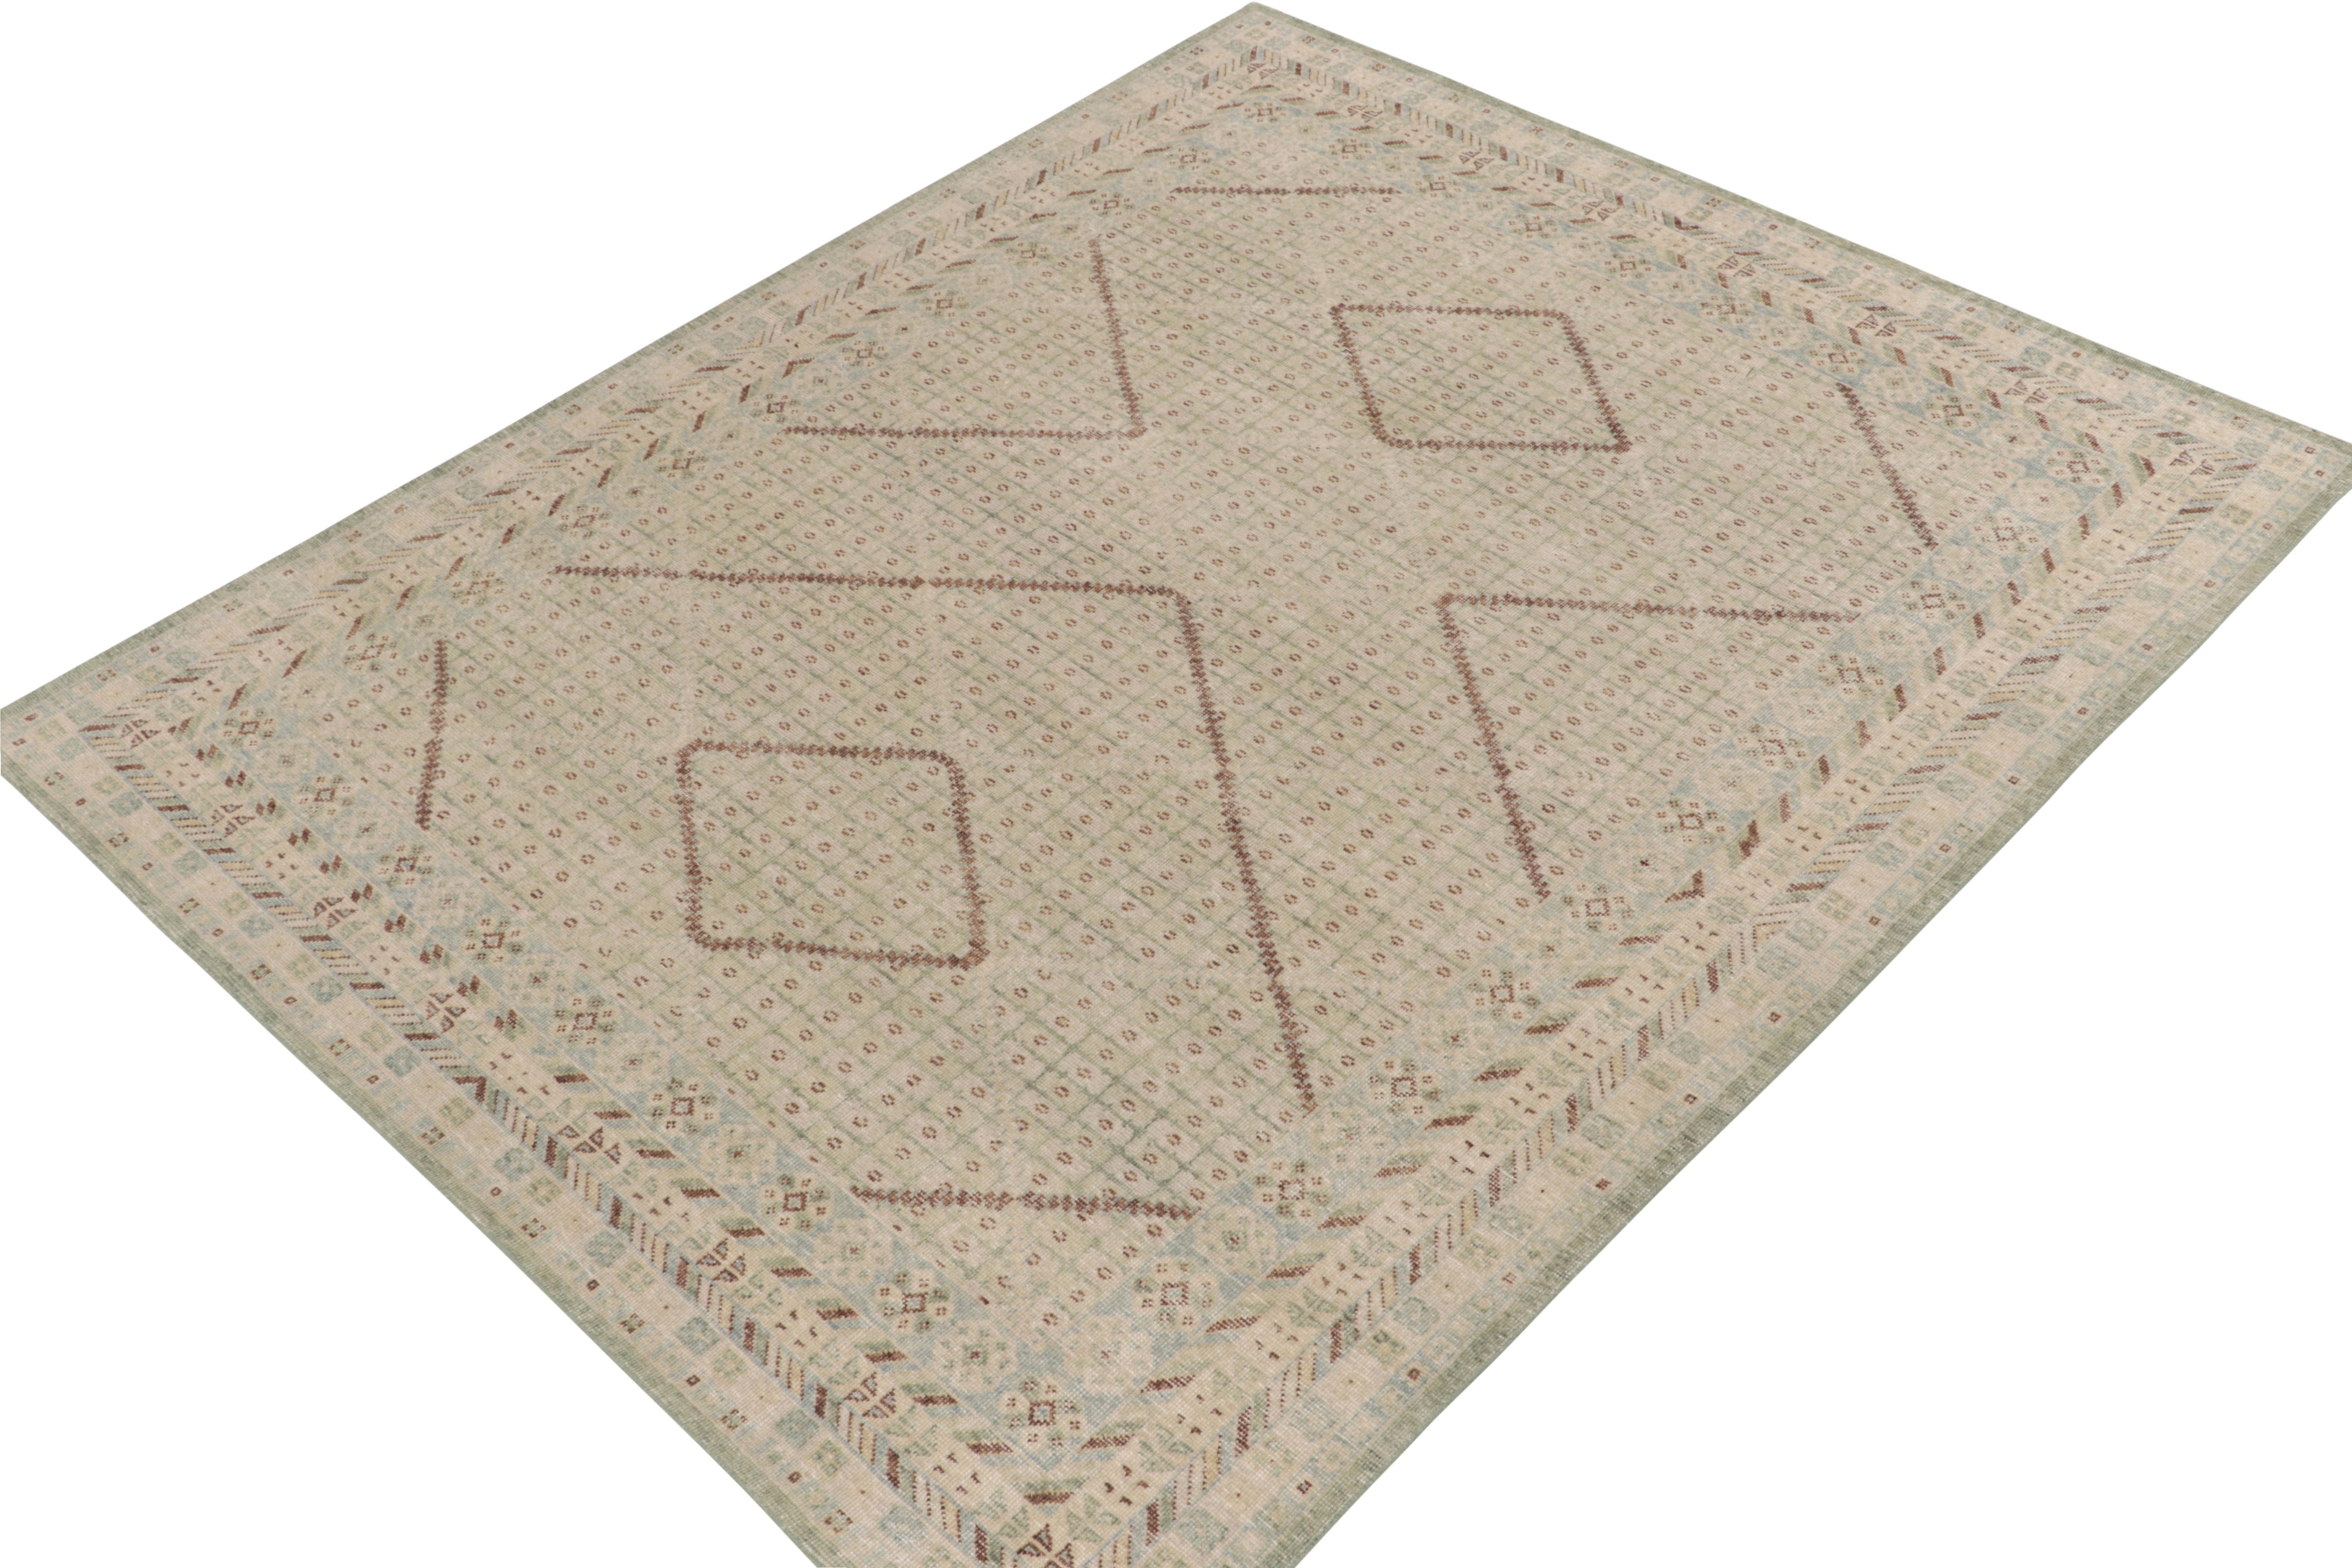 Dieser handgeknüpfte Teppich im Format 8x10 aus dem Sortiment von Rug & Kilim ist von antiken Khotan-Teppichen inspiriert, die zu den einzigartigsten und verzeihlichsten Designs gehören, die unser Direktor aufgrund seiner Erfahrung mit Klassikern